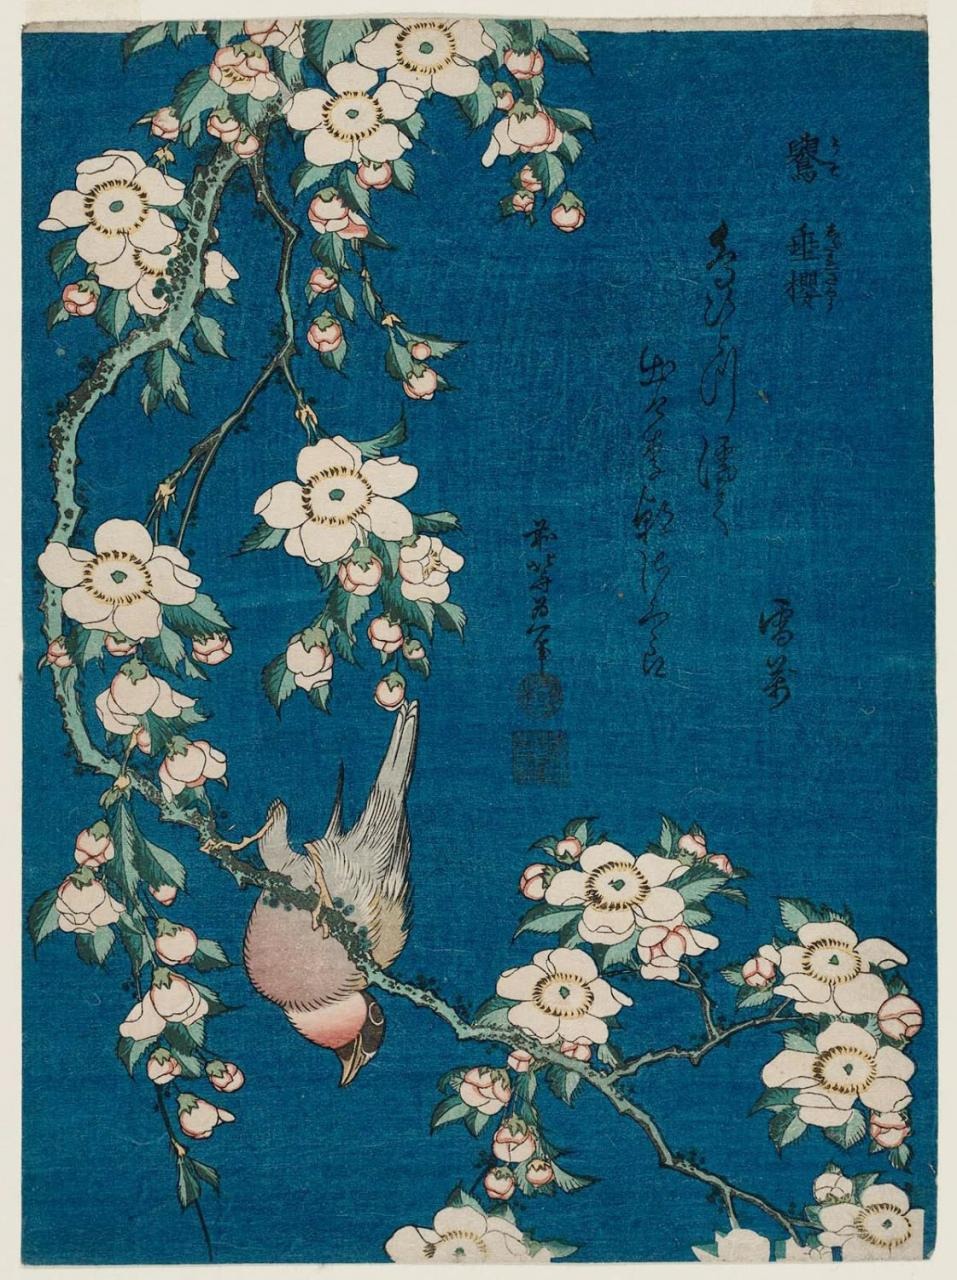 Bullfinch and Weeping Cherry (1834) by Katsushika Hokusai